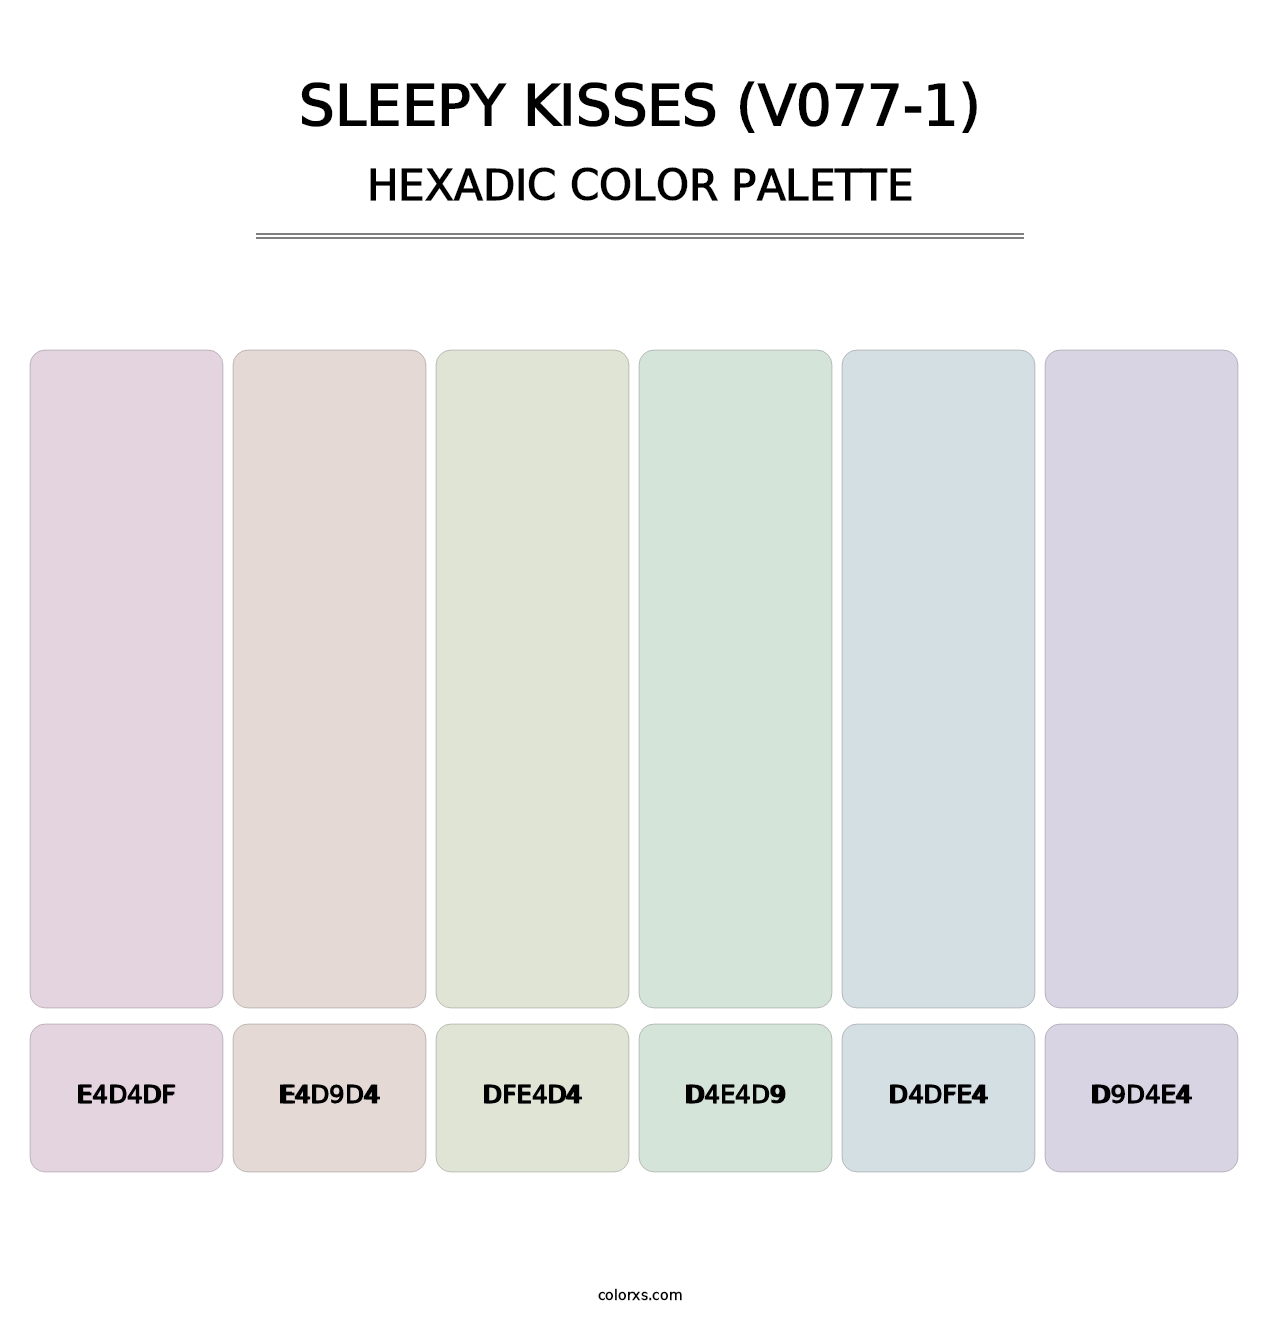 Sleepy Kisses (V077-1) - Hexadic Color Palette